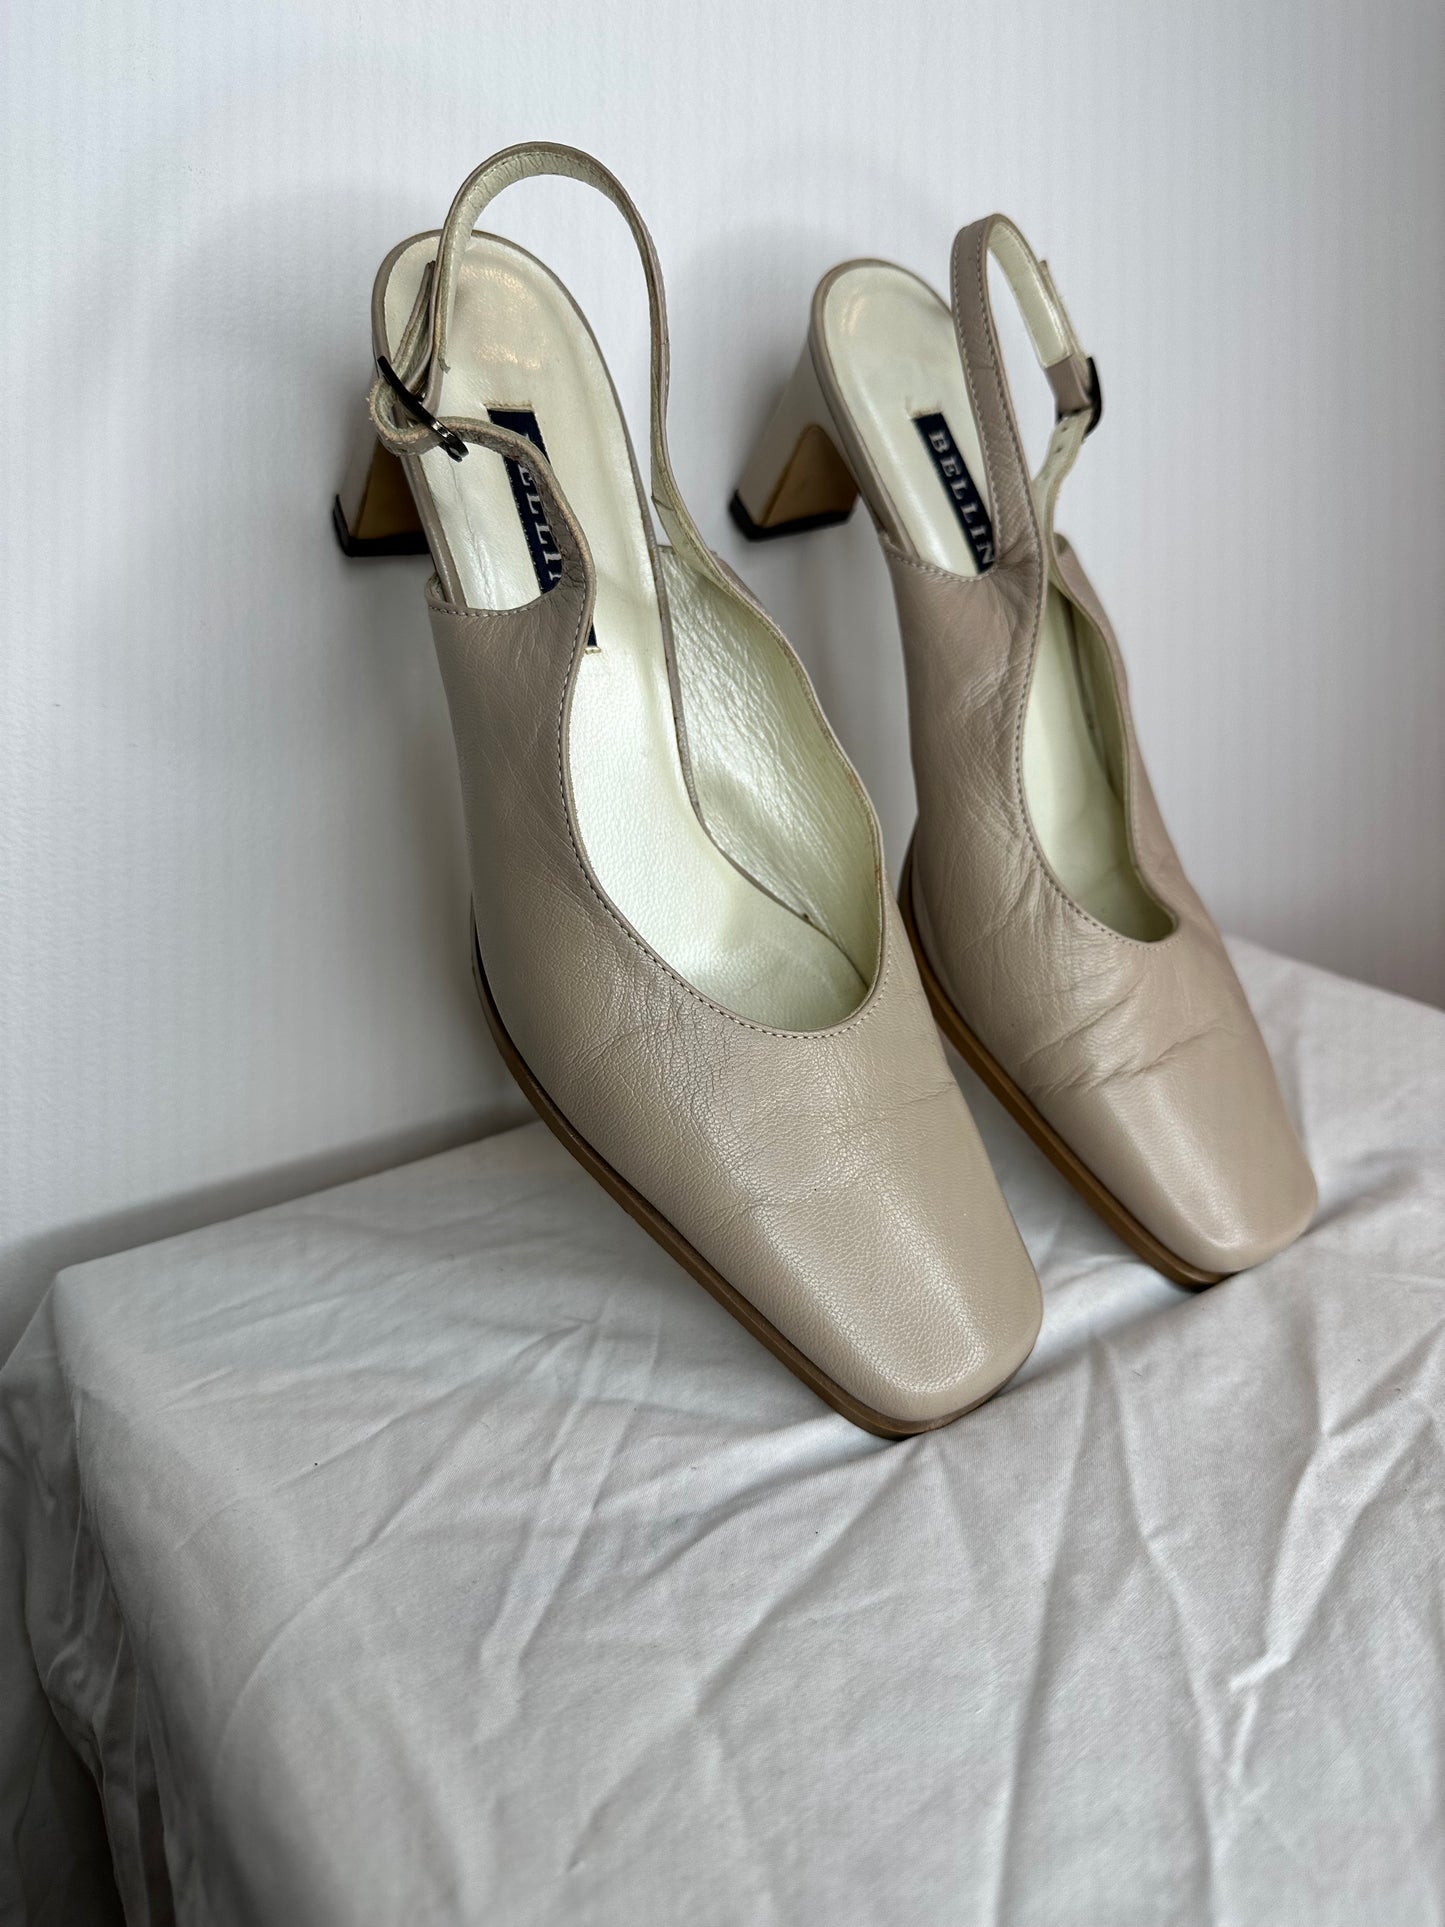 Vintage Bellini Sling Back Leather Heels (US 7 / EU 38)